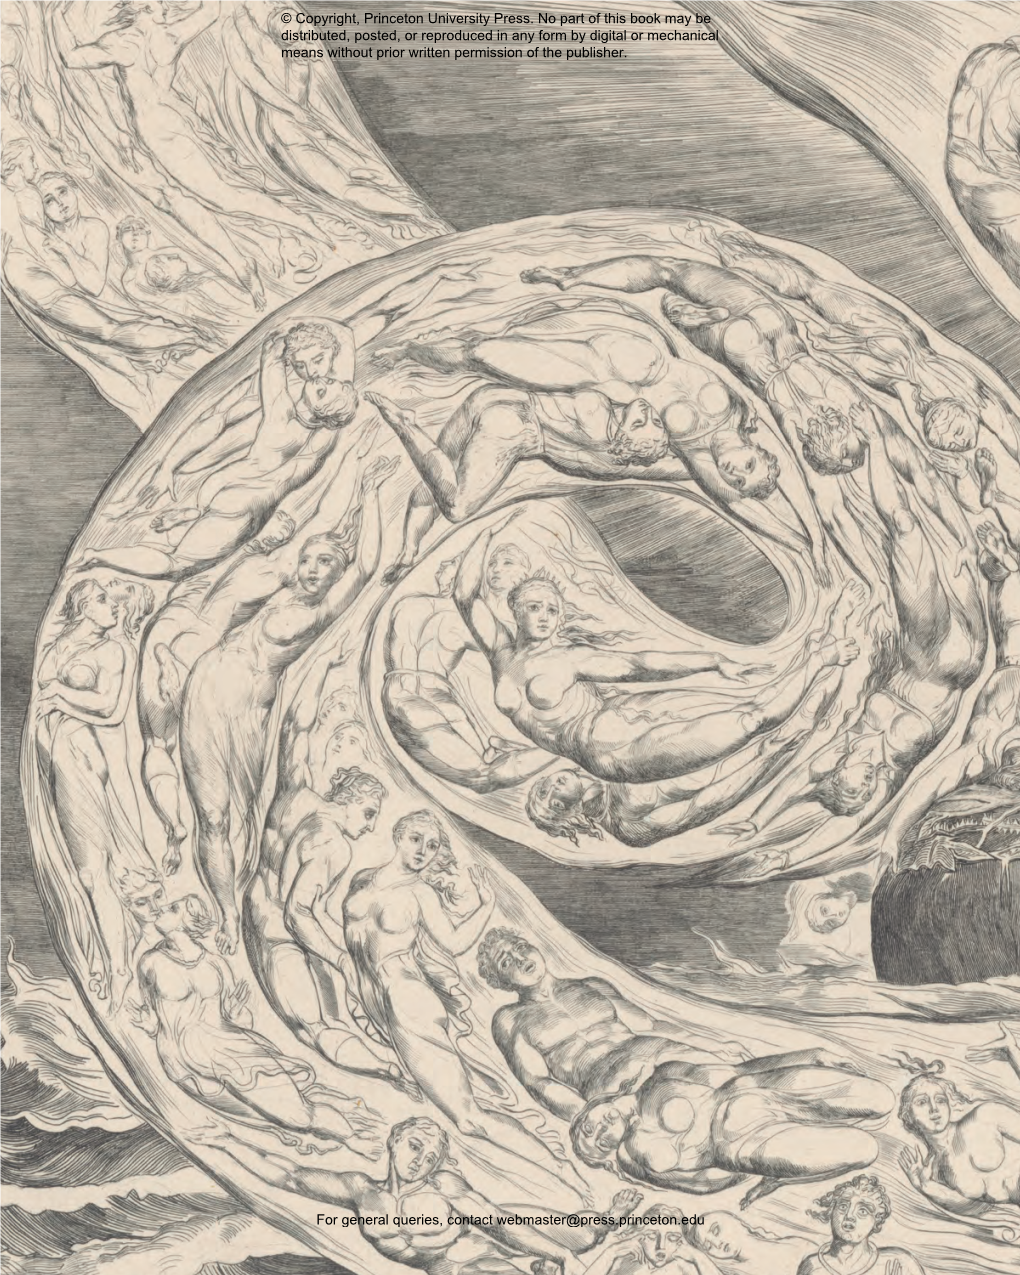 William Blake and the Age of Aquarius